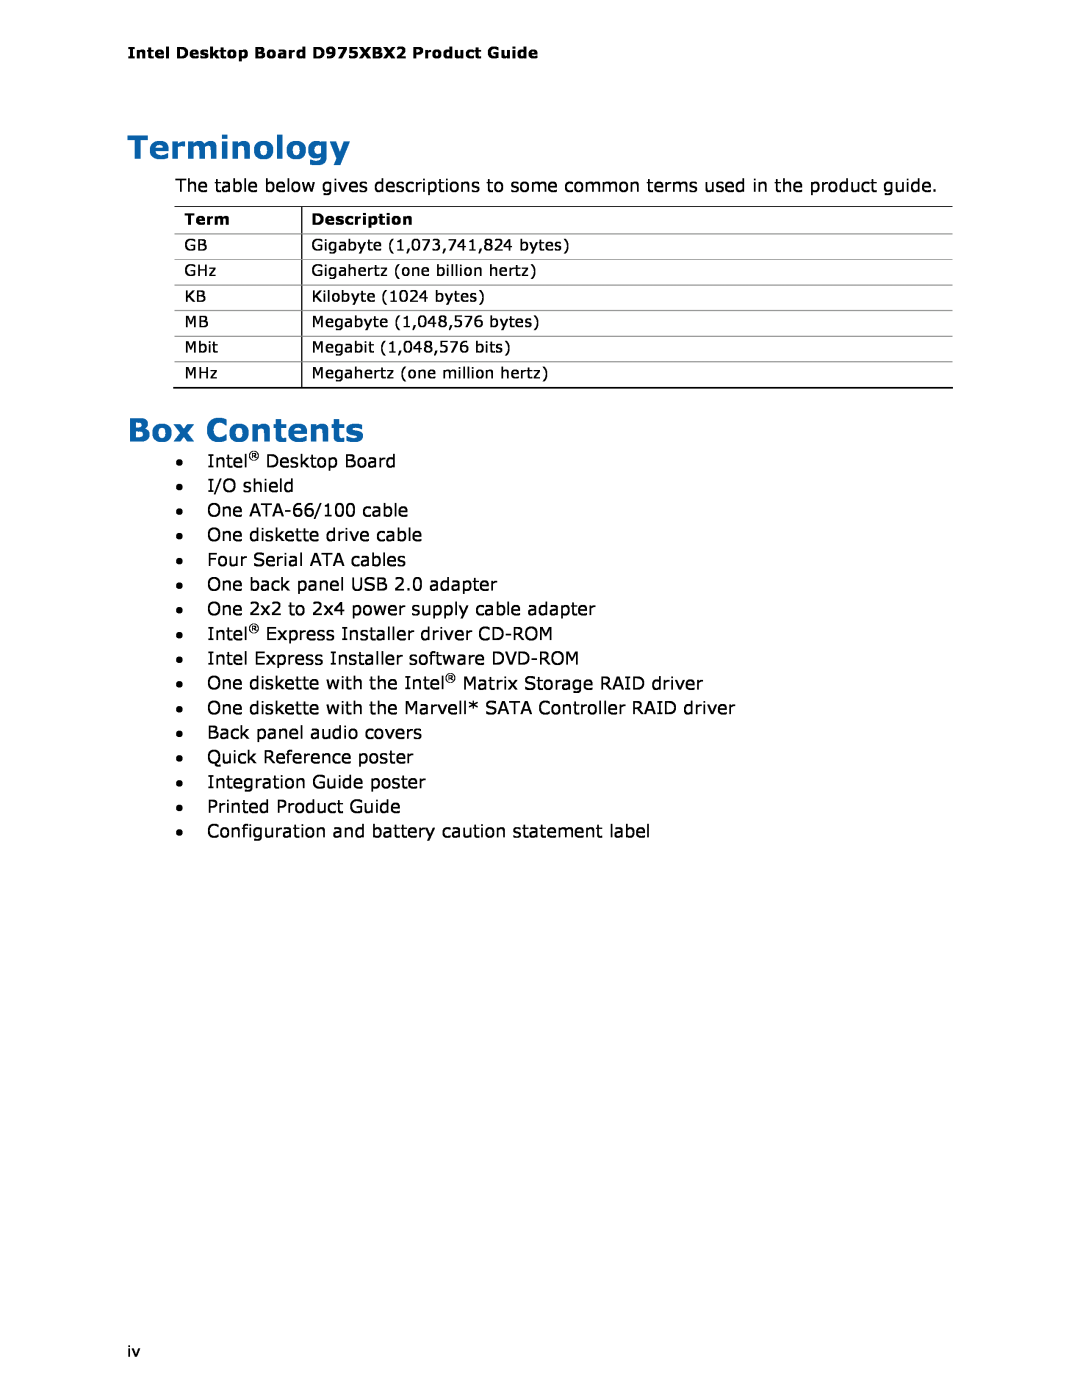 Intel D975XBX2 manual Terminology, Box Contents 